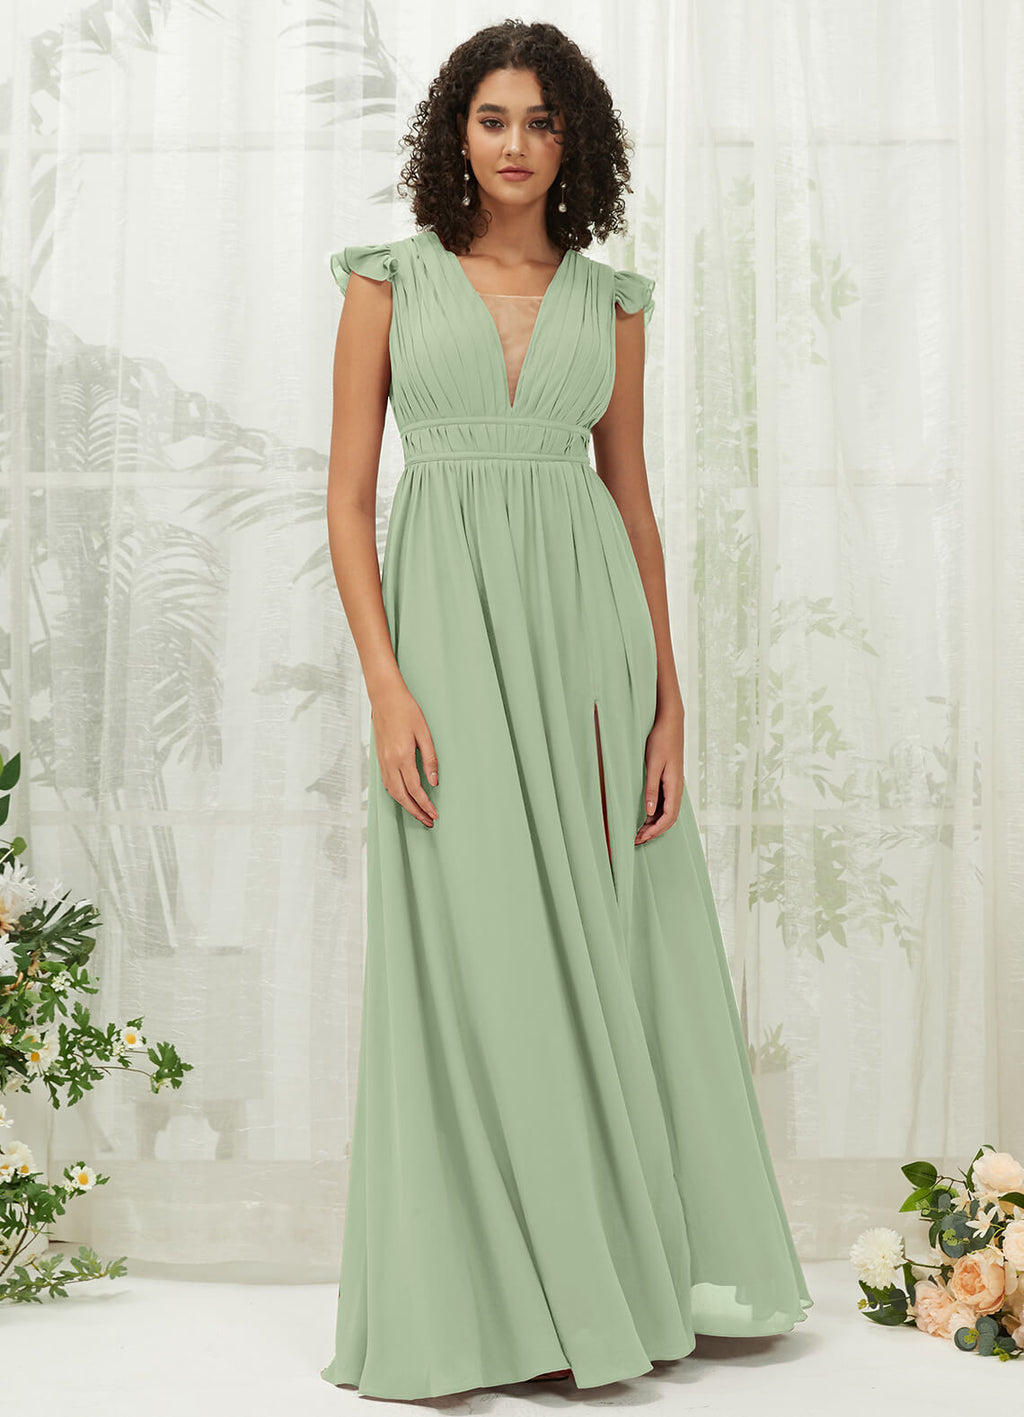 NZ Bridal Sage Green Sheer V Neck Chiffon Flowy Maxi Bridesmaid Dress R0410 Collins a